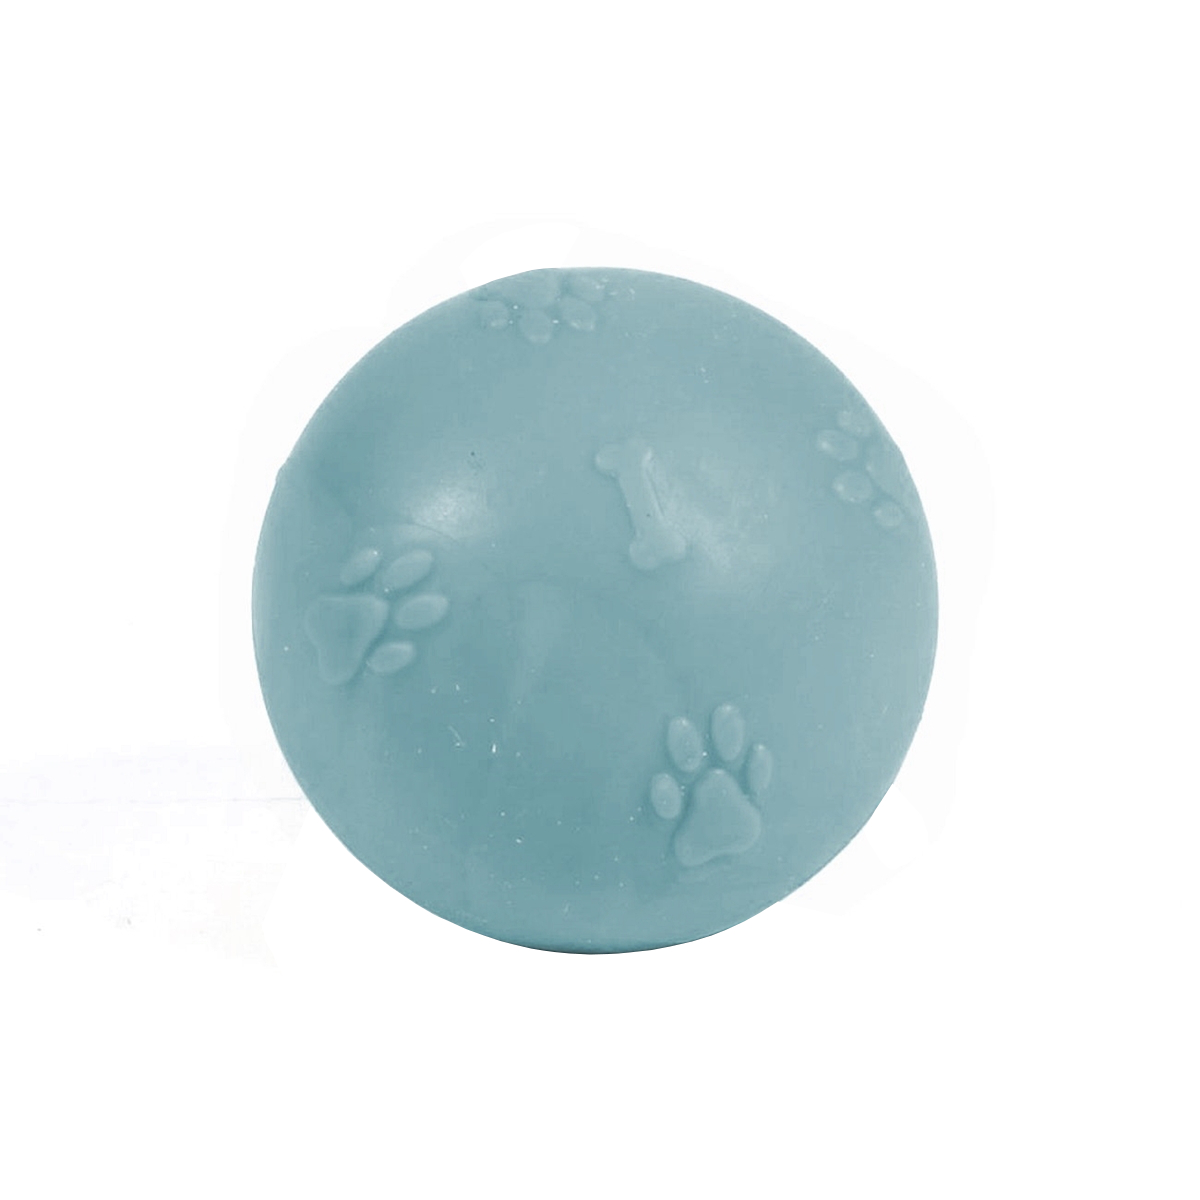 Pati Desenli Termoplastik Sert Köpek Oyun Topu 8 cm Large Açık Mavi